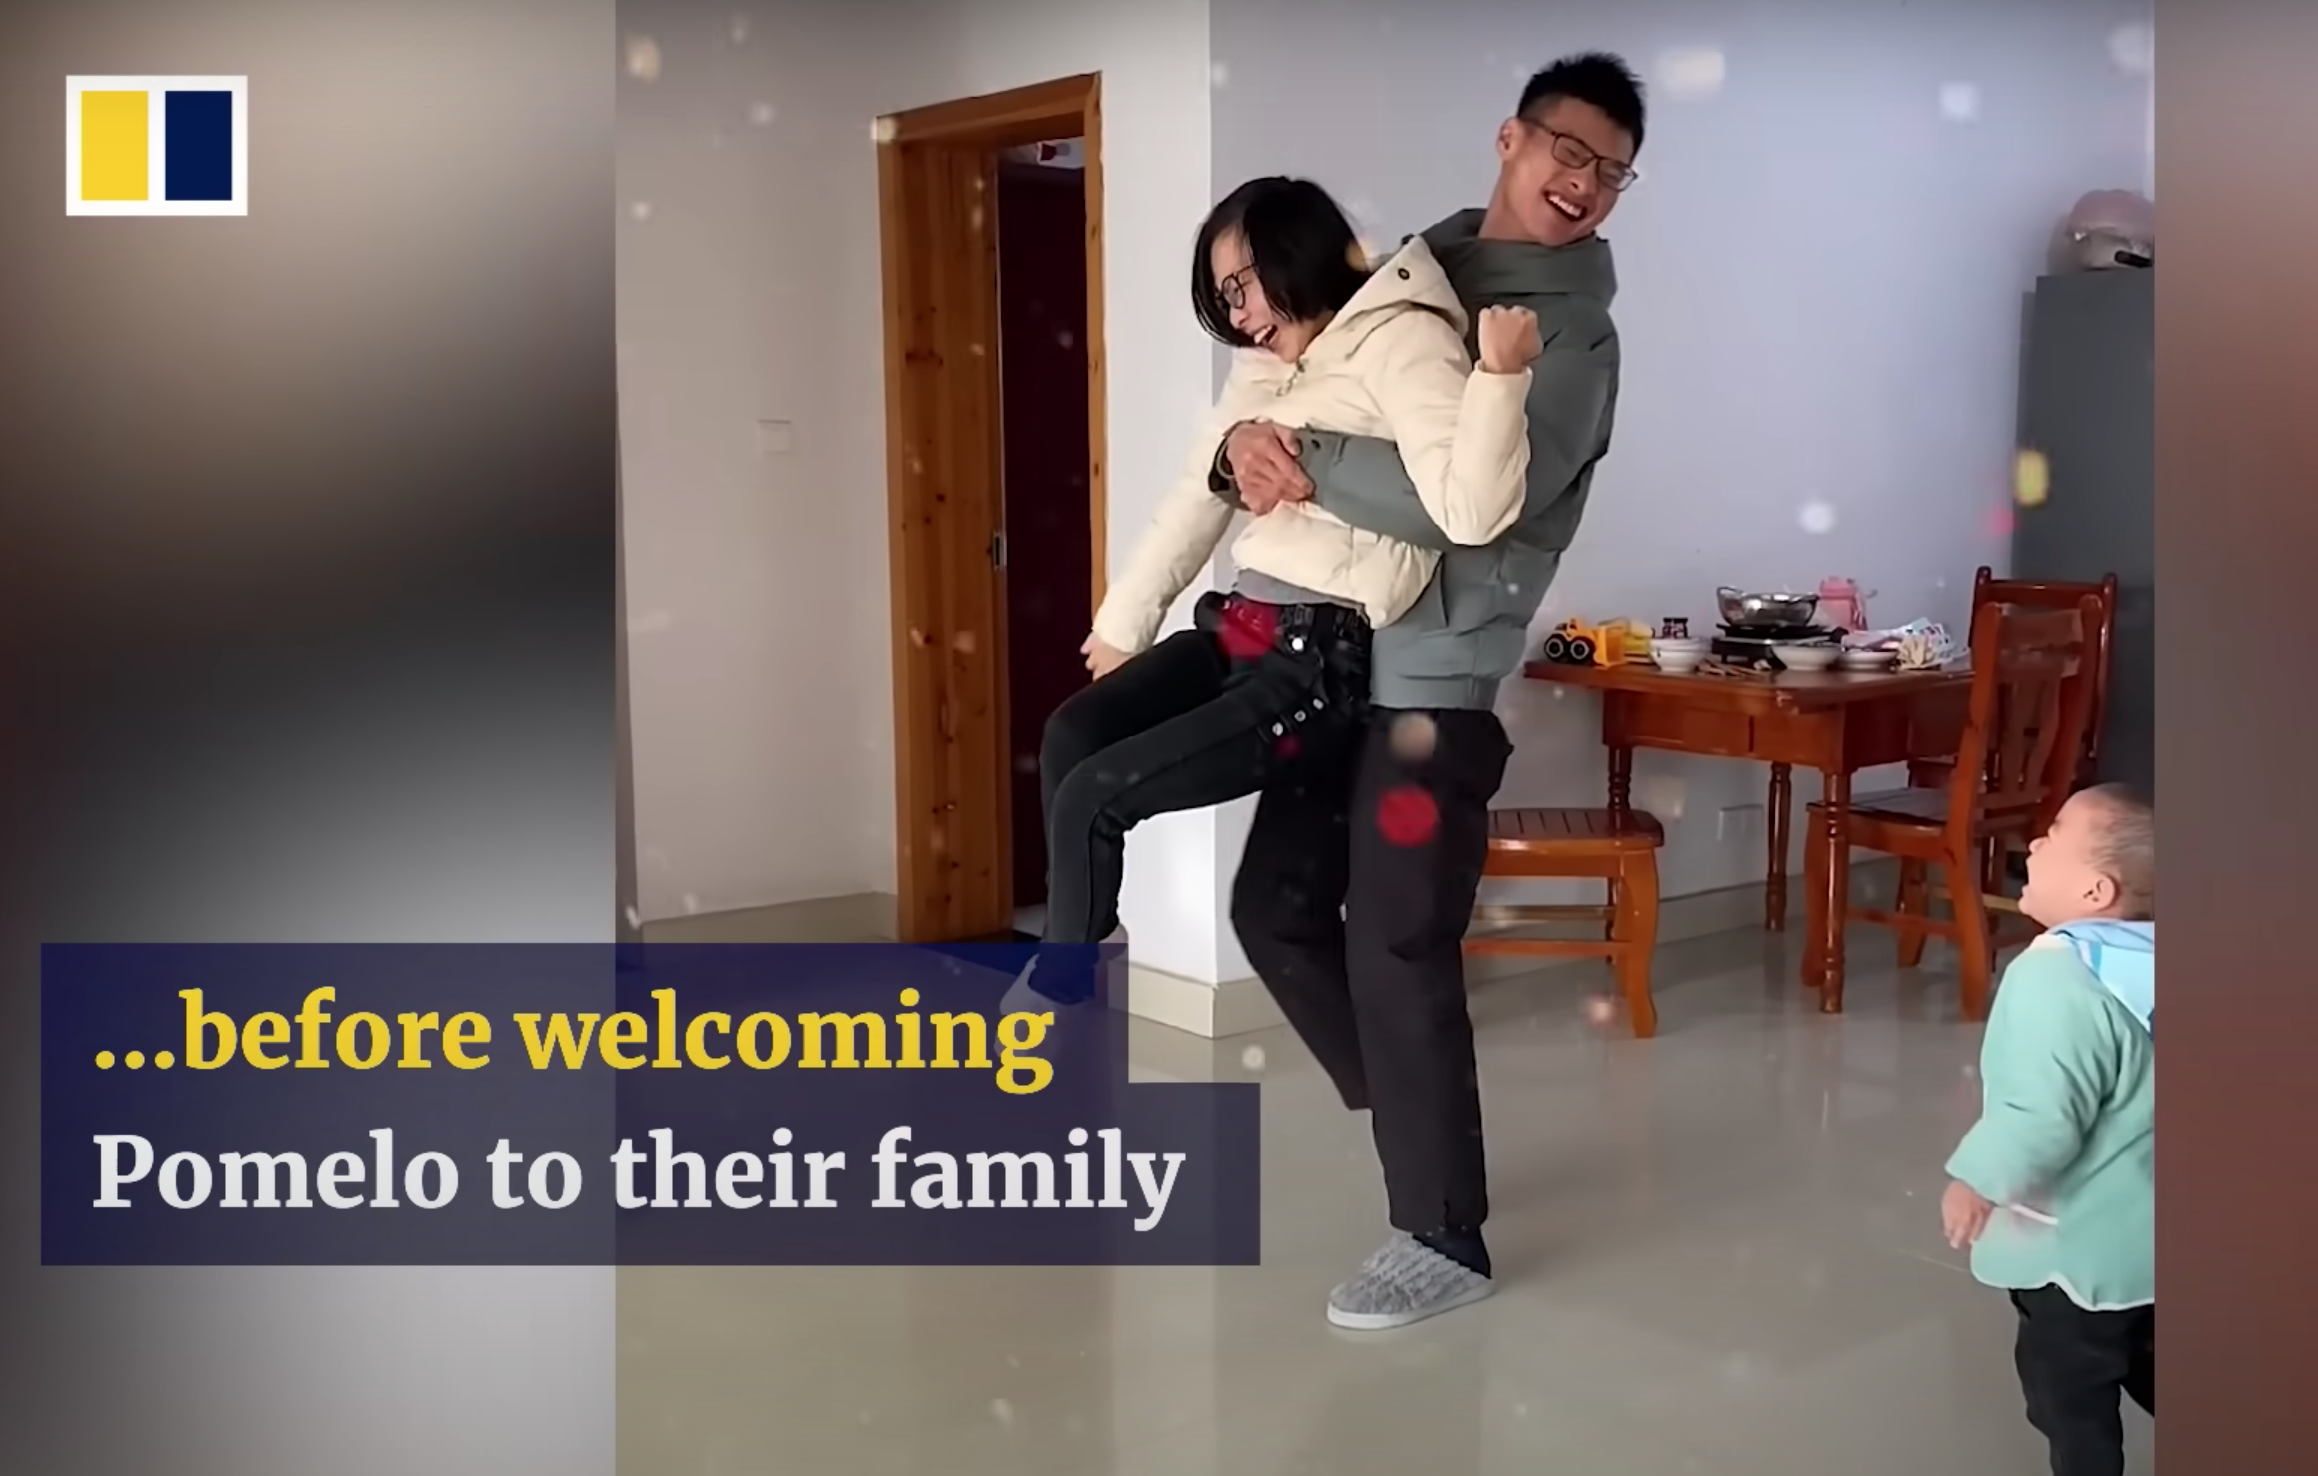 Pomelos Eltern versuchen, das Leben so normal wie möglich zu leben. | Quelle: Youtube.com/South China Morning Post